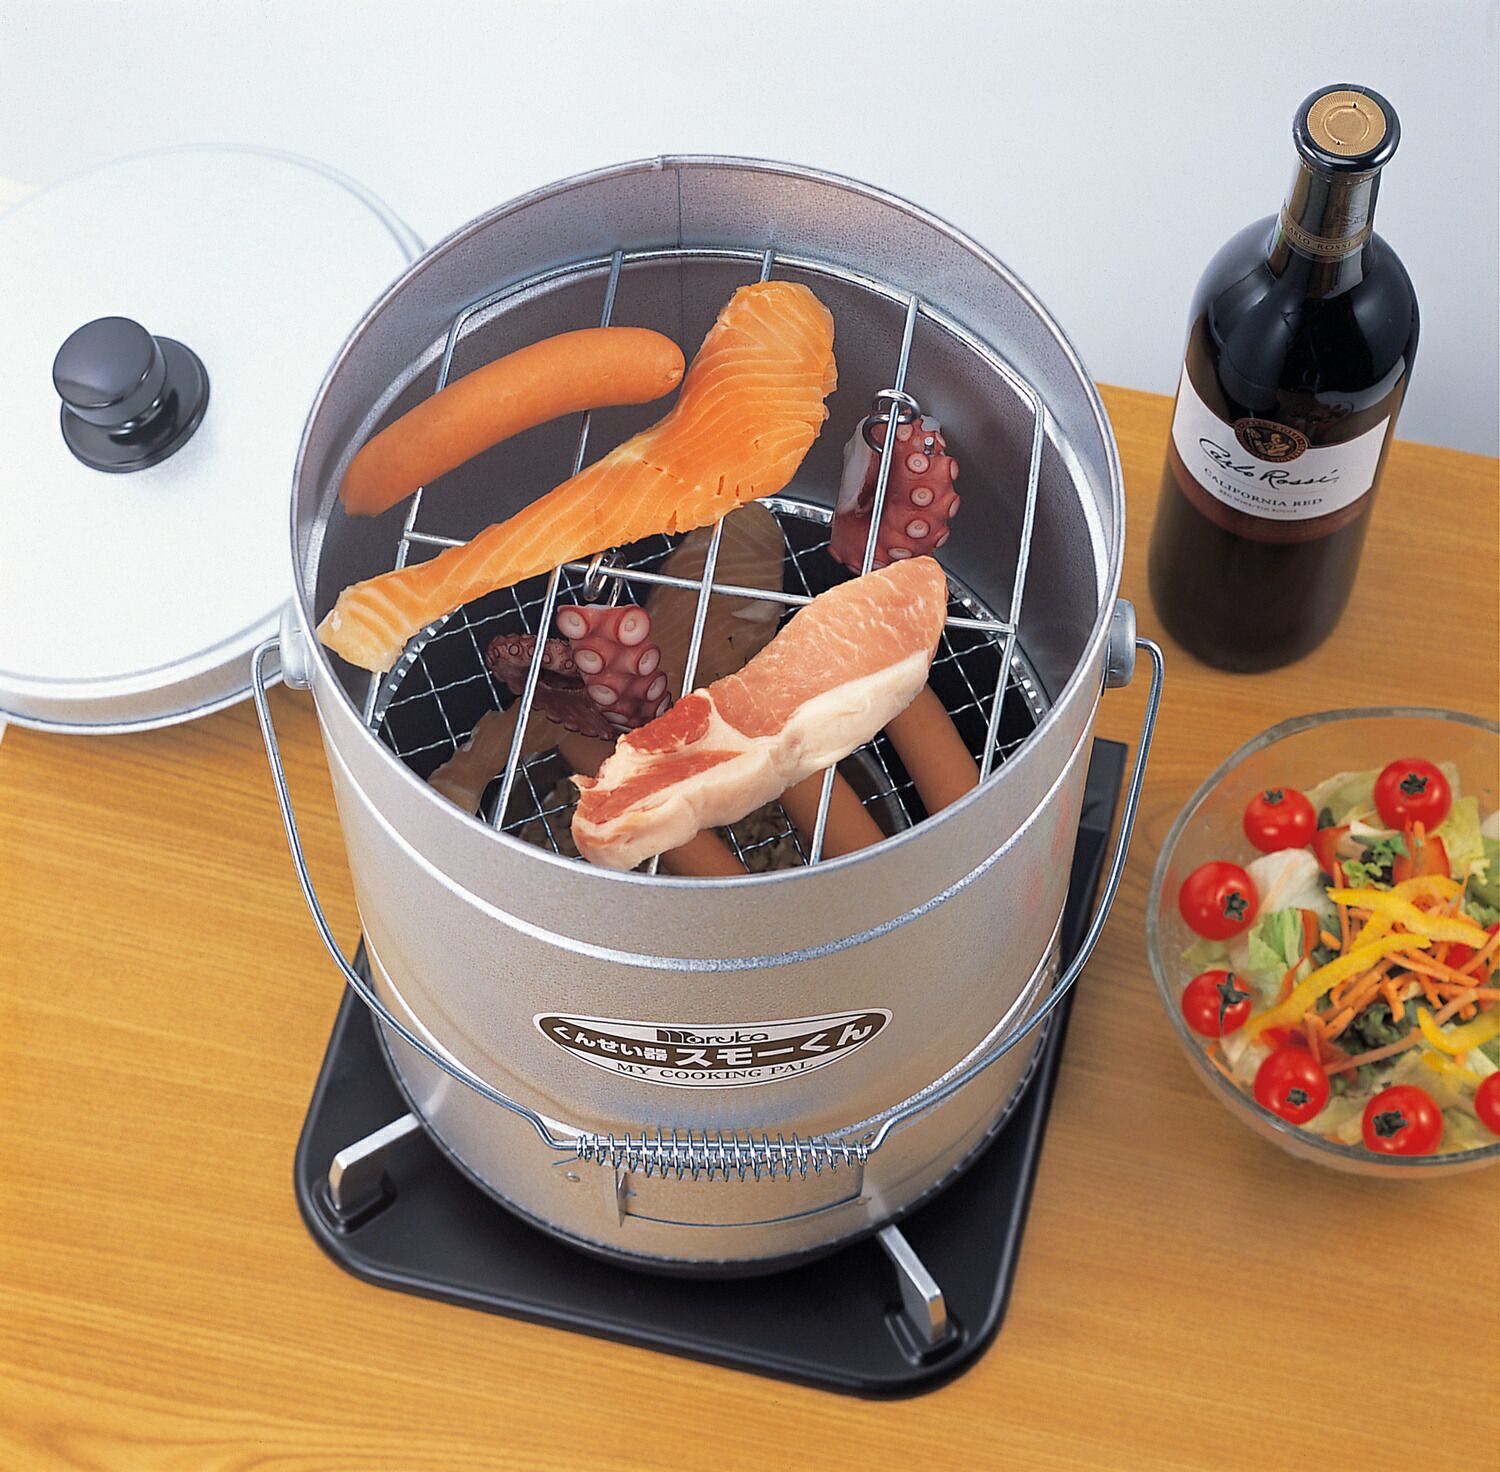 スモーくんDX 網つき スモーク皿 お手軽 燻製器 熱燻 温燻 対応 マルカ 燻製 BBQ ホームパーティ